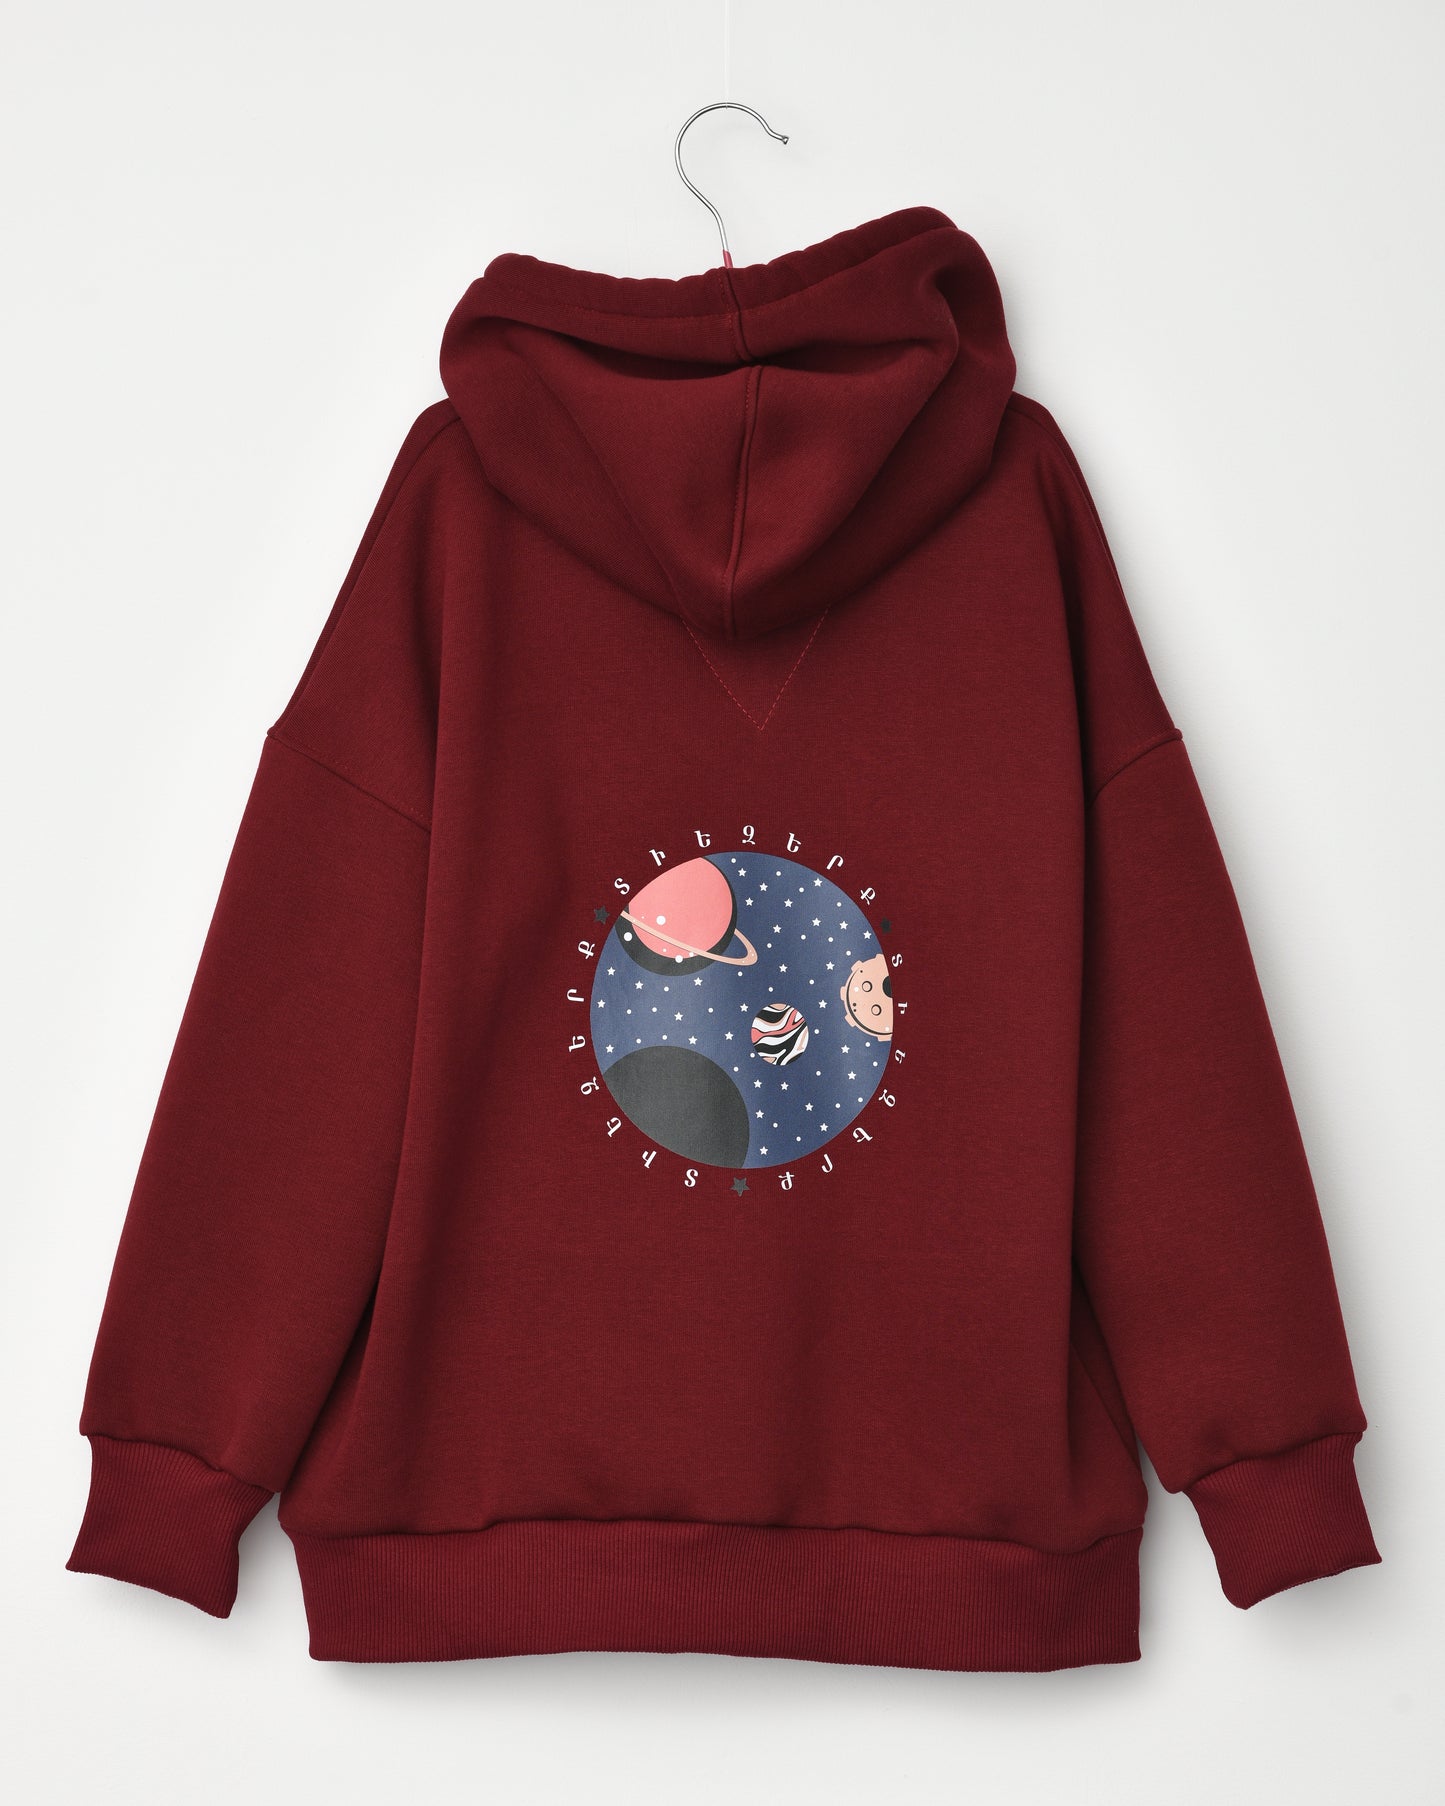 Universe hoodie